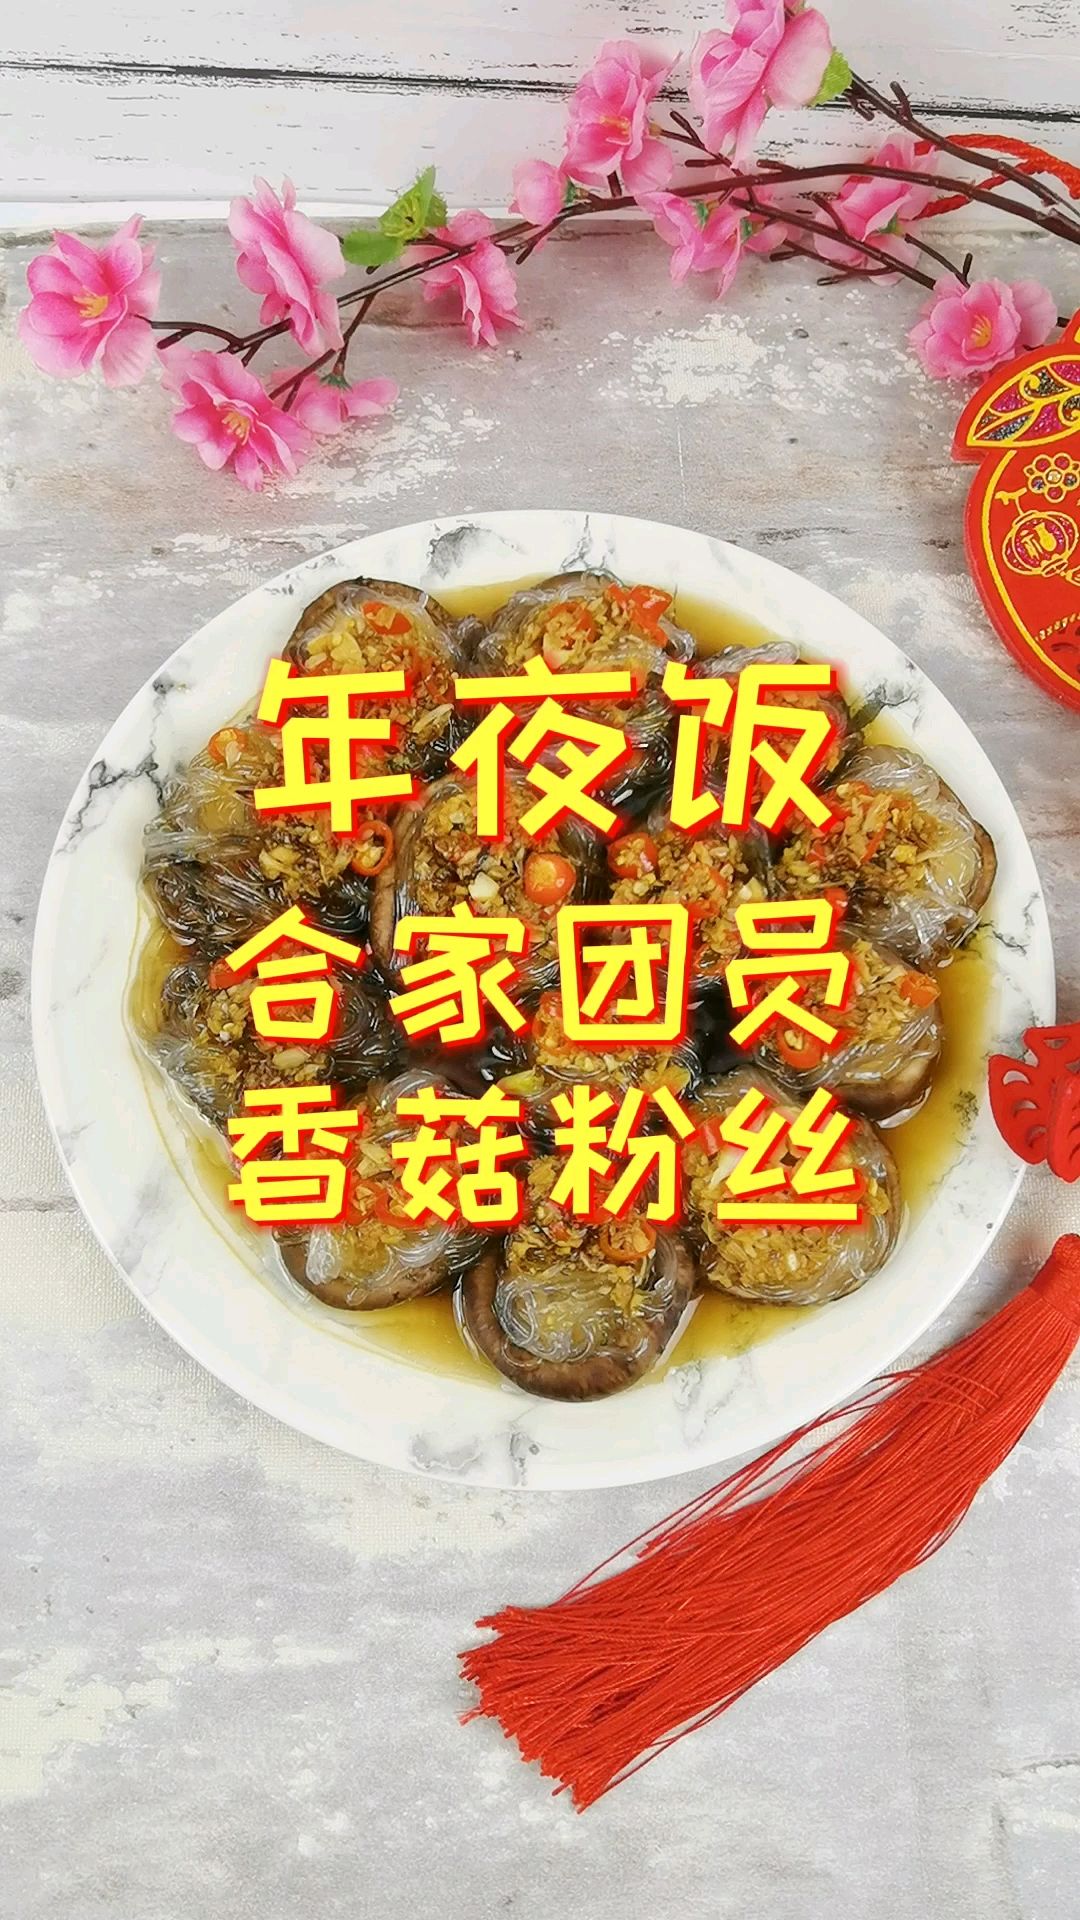 New Year's Eve Dinner-reunion Round Shiitake Mushroom Fans, Shiitake Mushrooms Do This, recipe